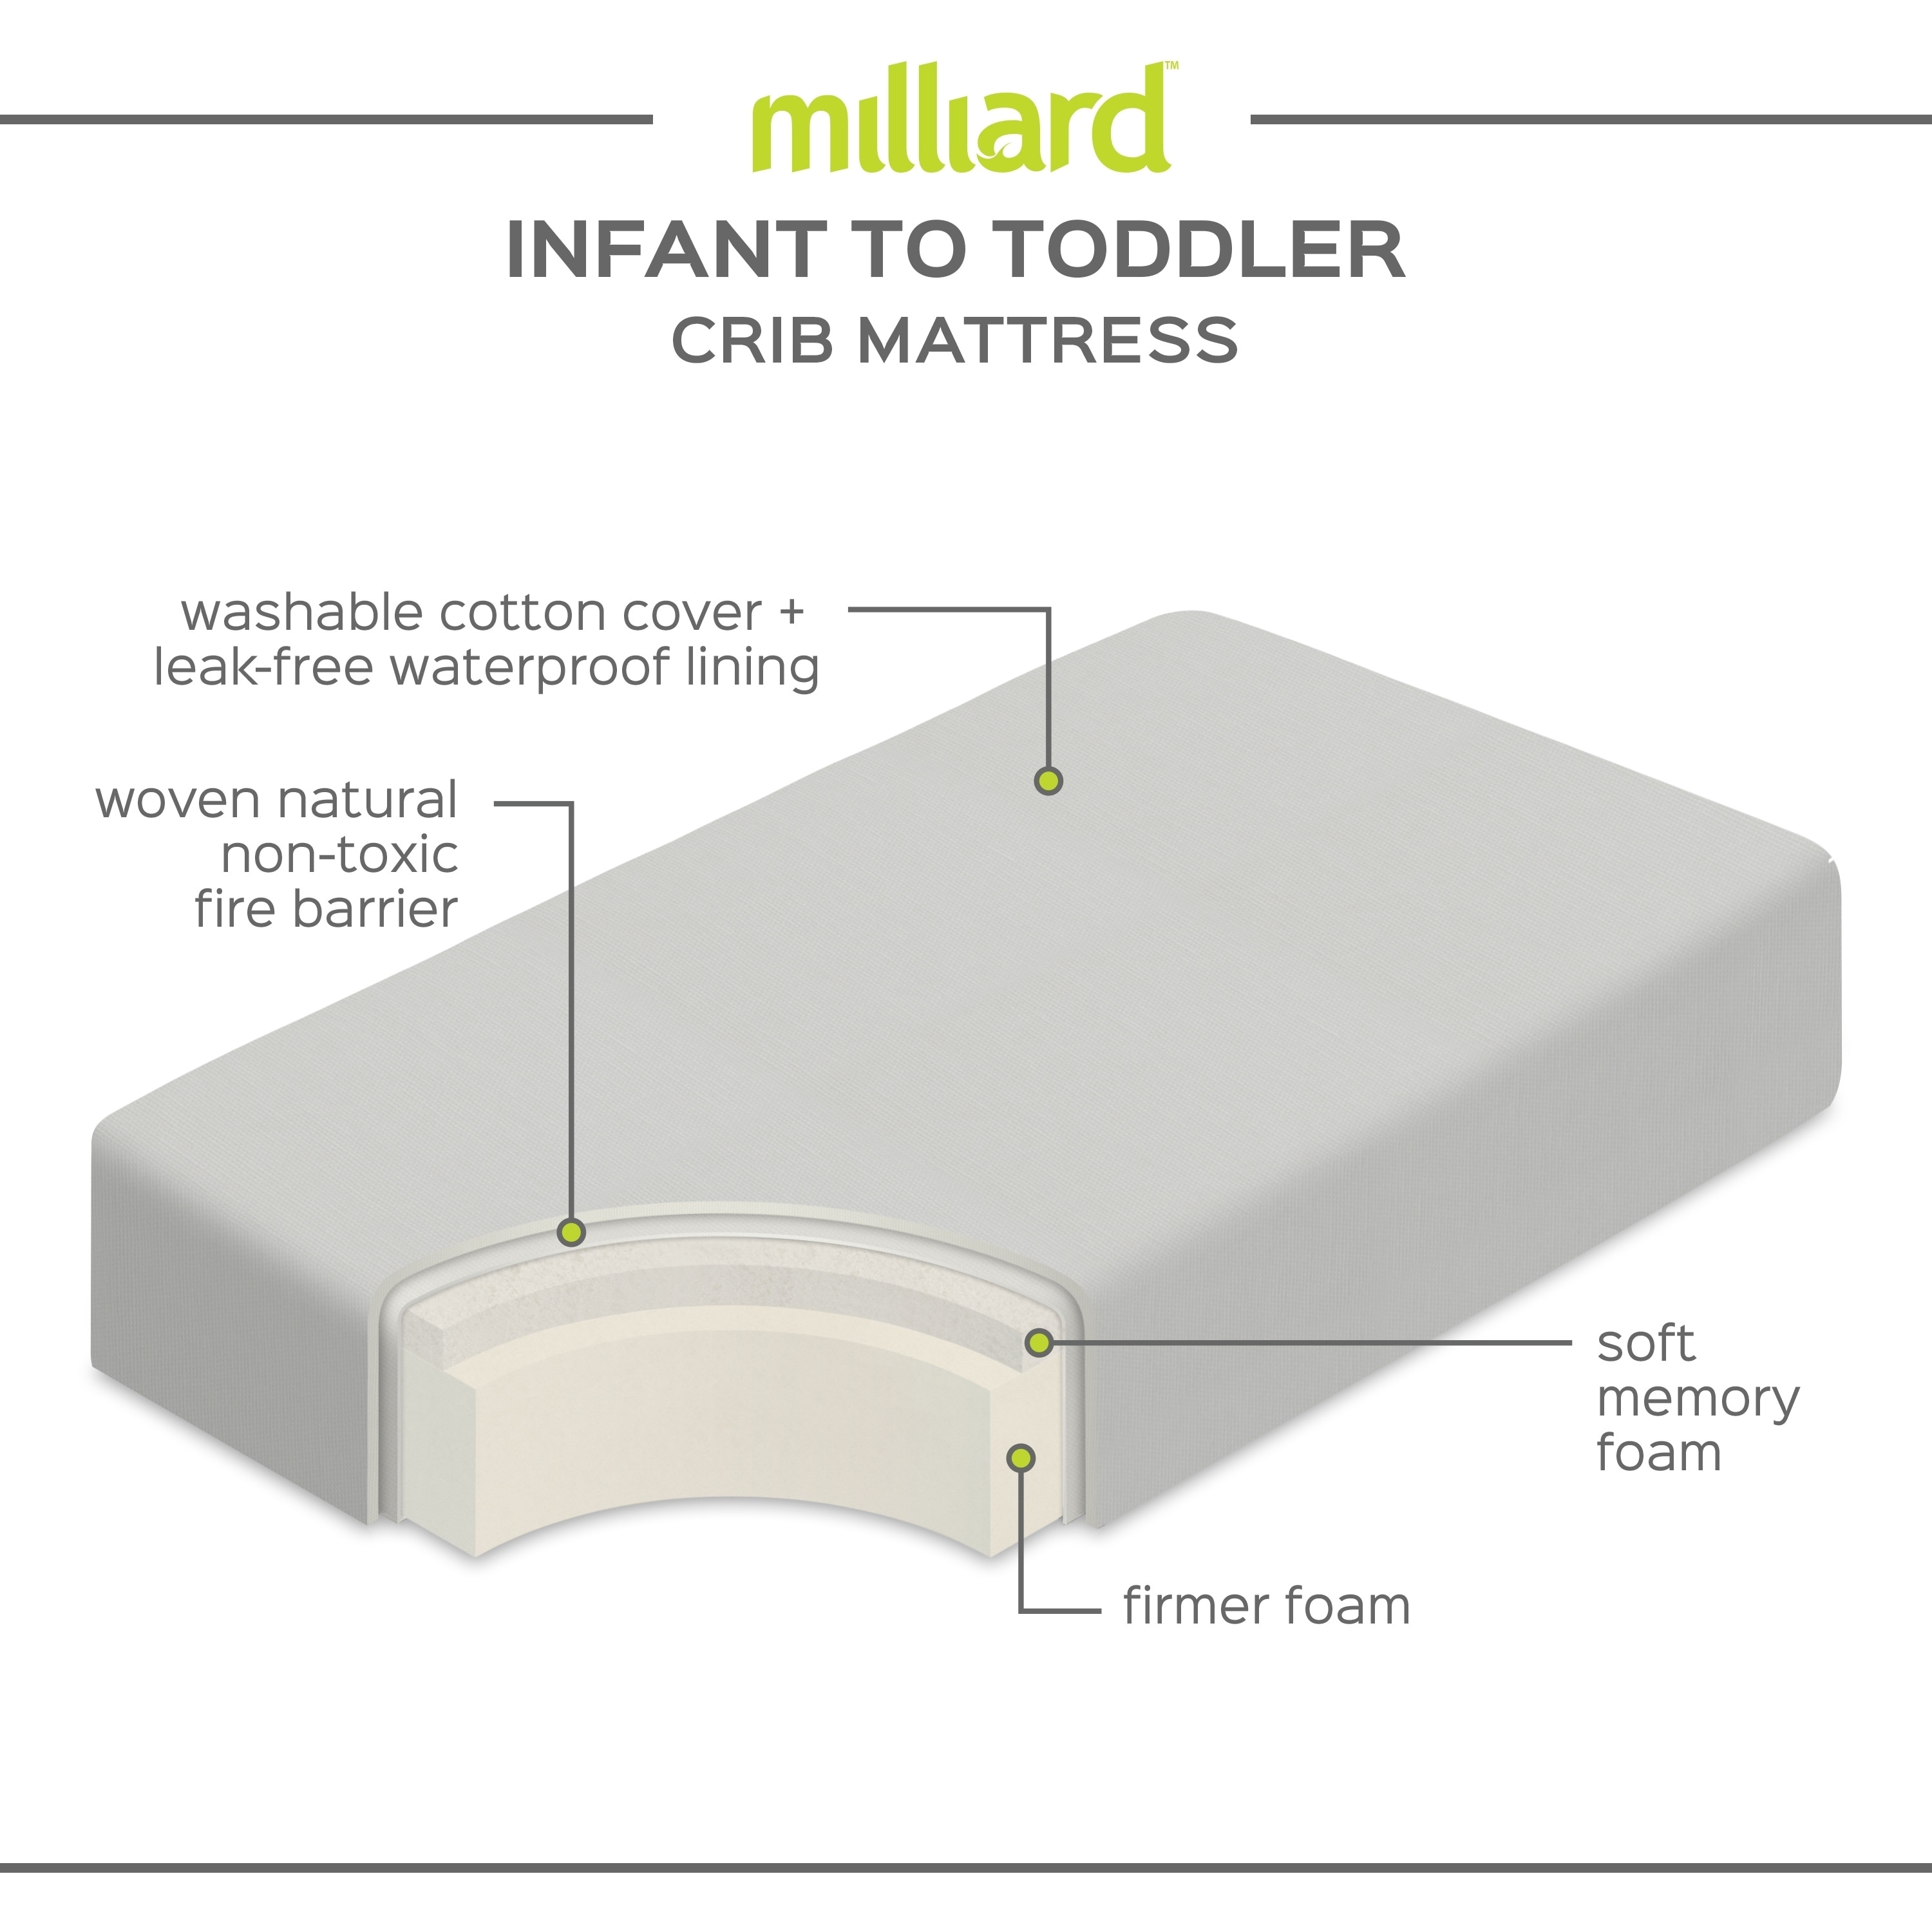 milliard crib mattress dual comfort system review